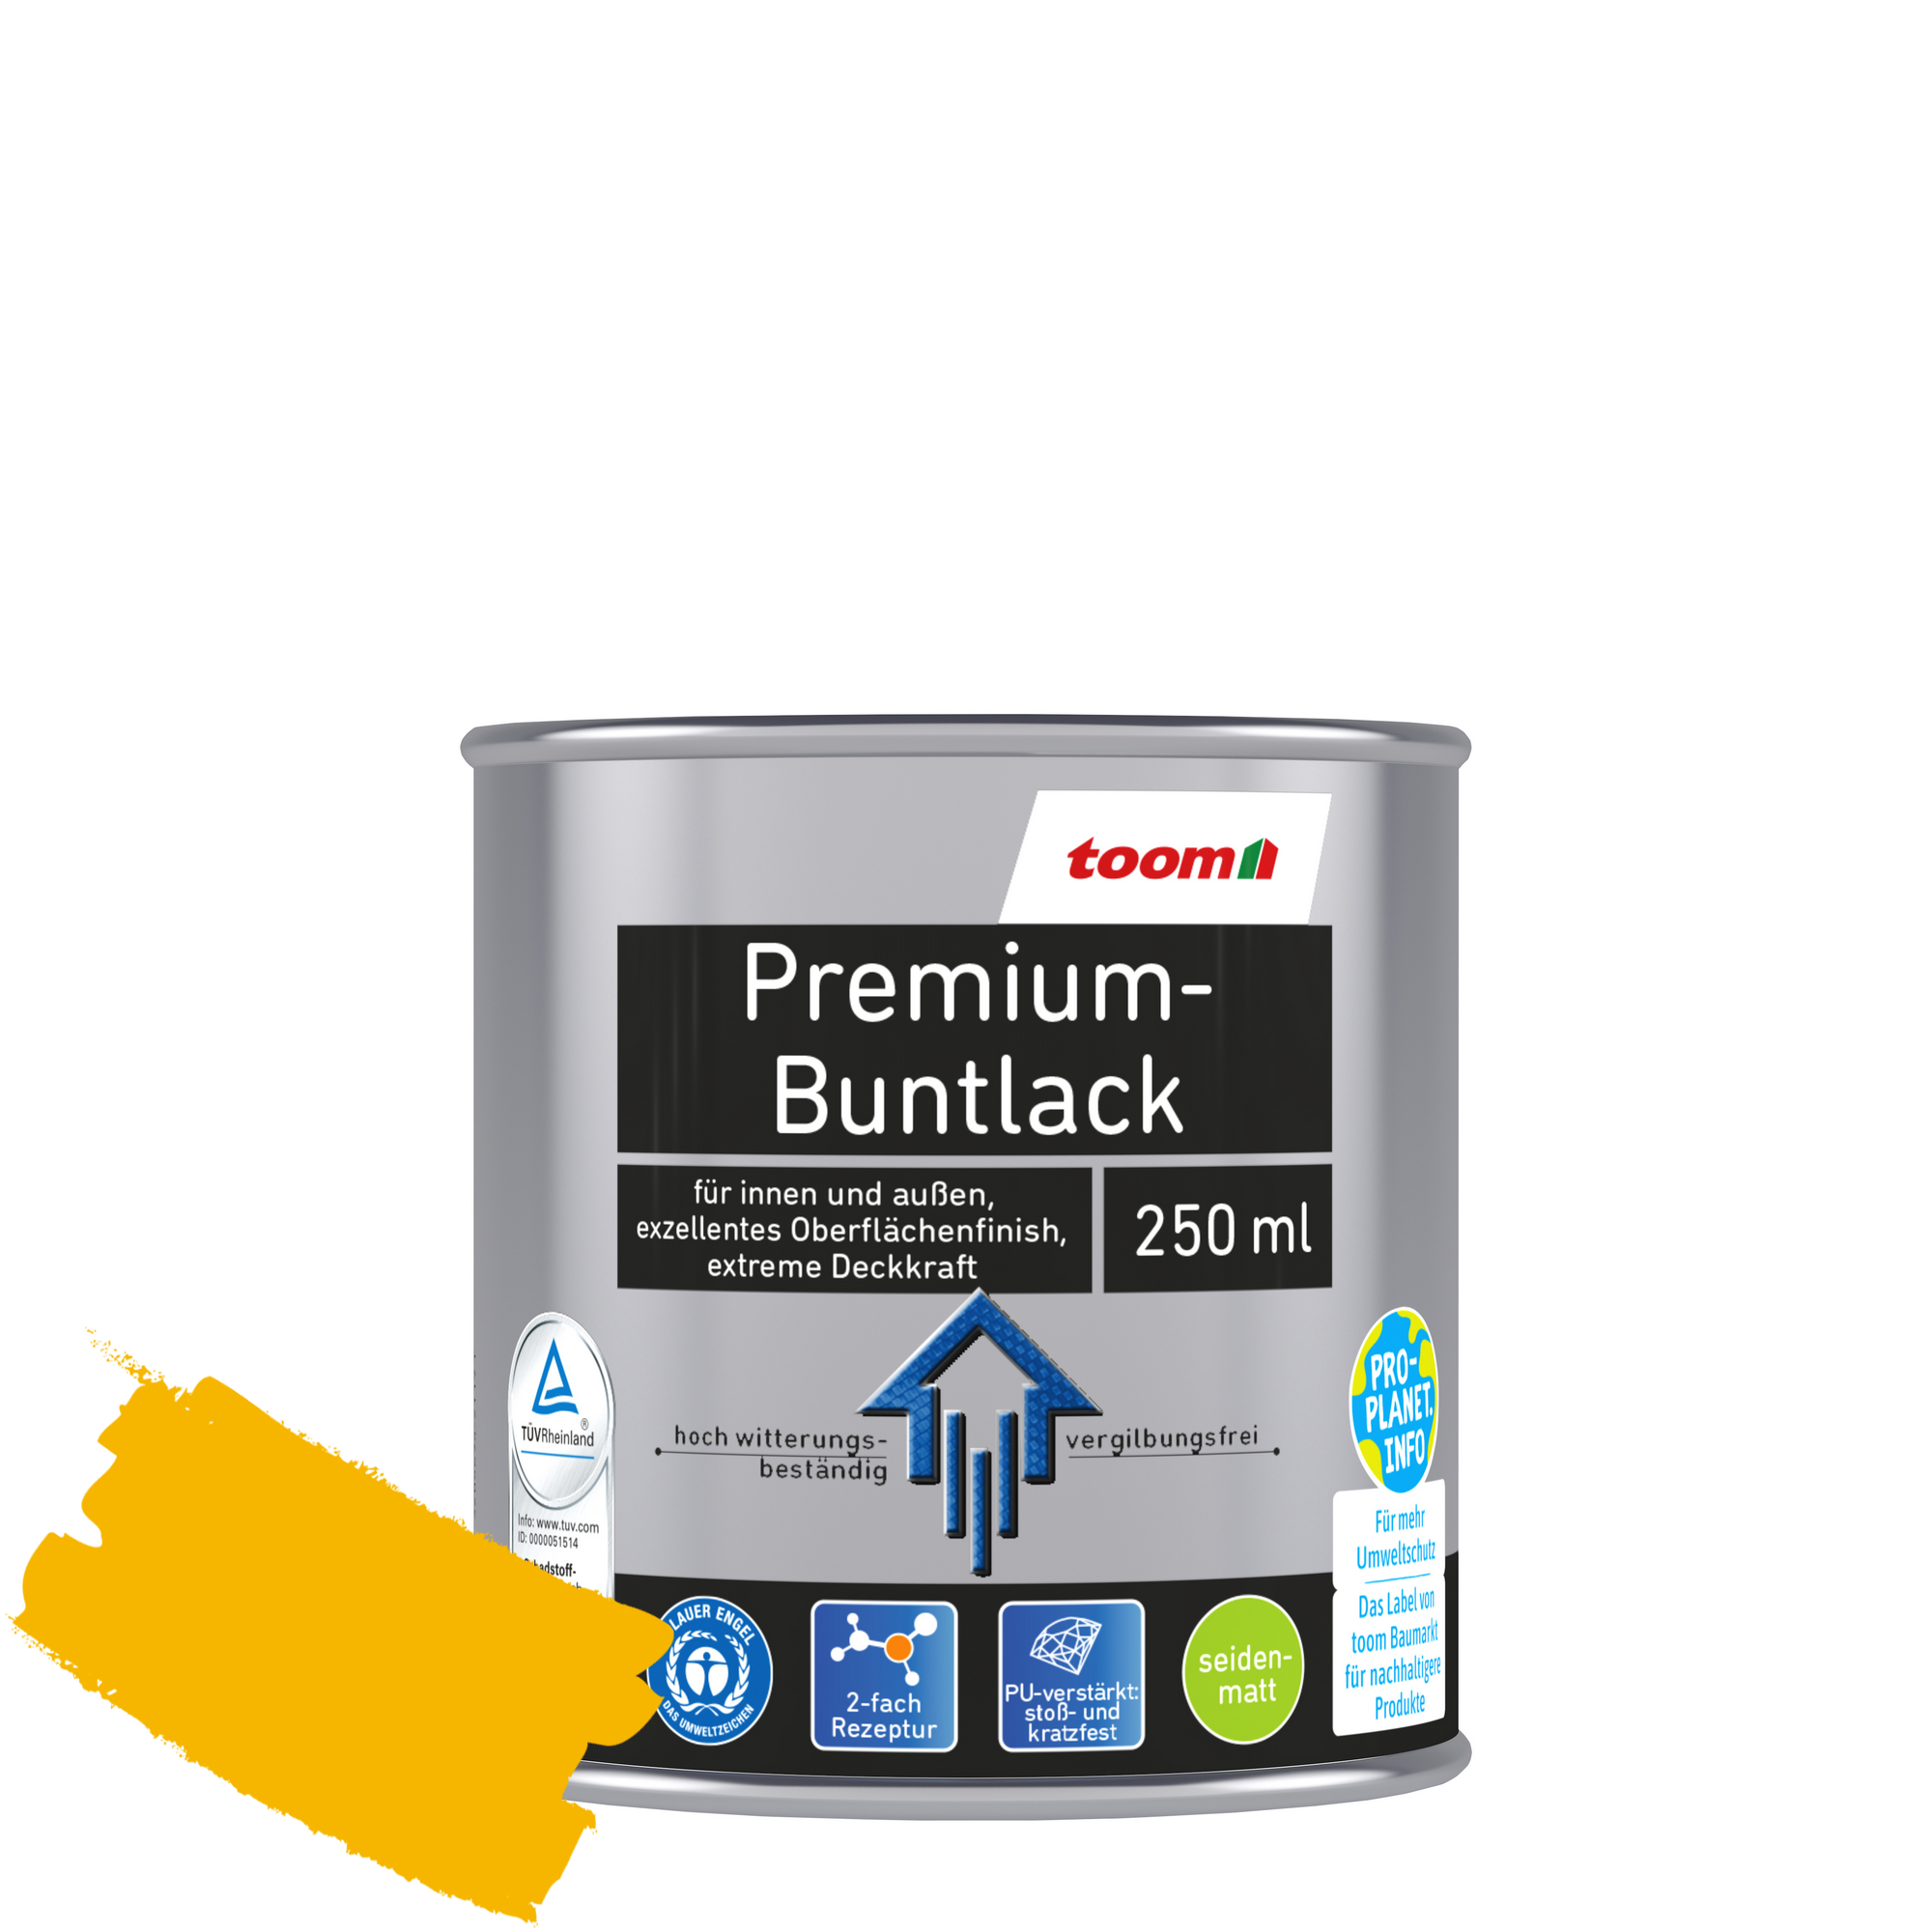 Premium-Buntlack rapsgelb seidenmatt 250 ml + product picture